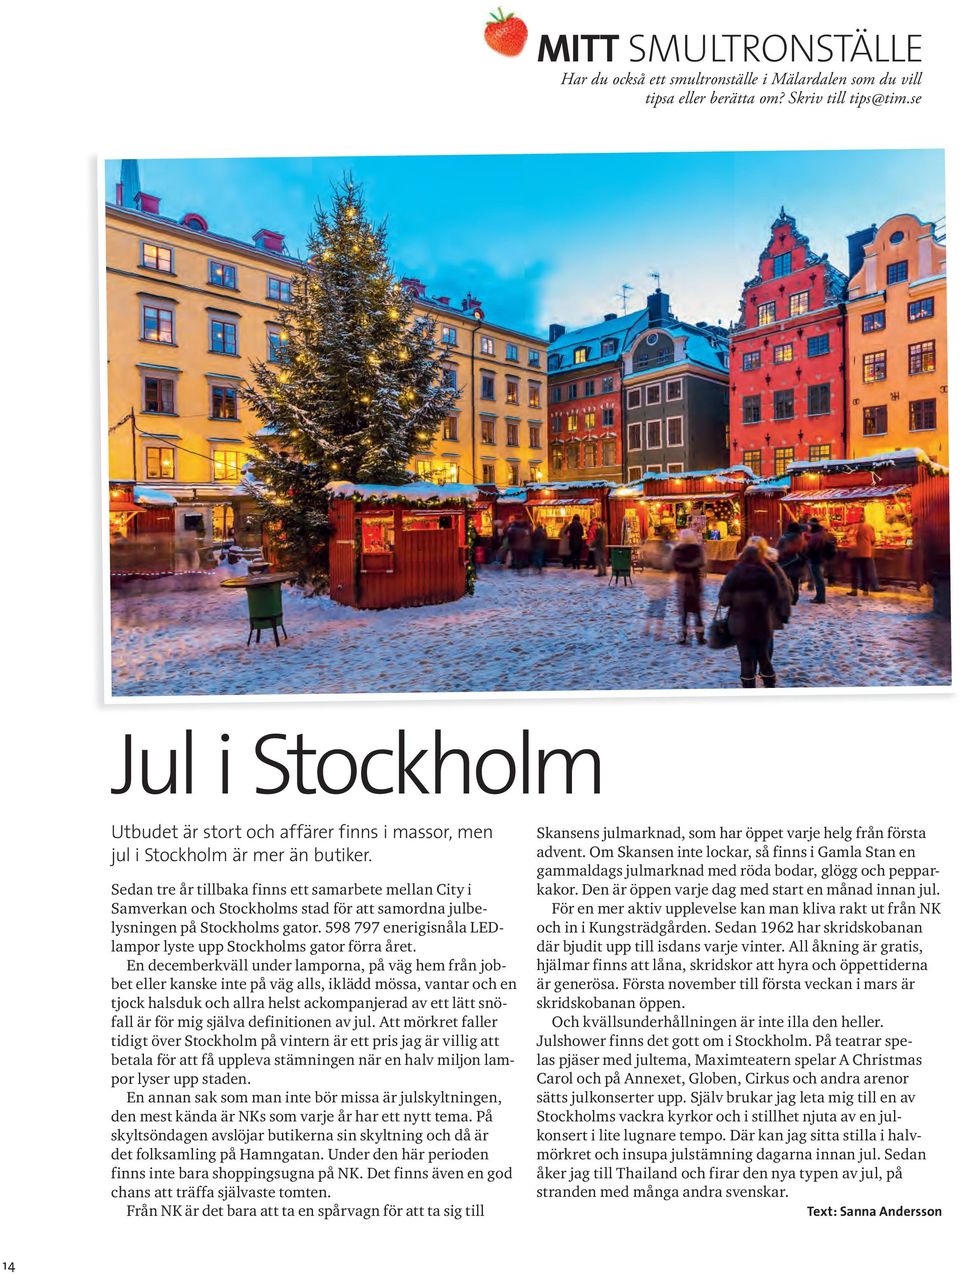 Sedan tre år tillbaka finns ett samarbete mellan City i Samverkan och Stockholms stad för att samordna julbelysningen på Stockholms gator.